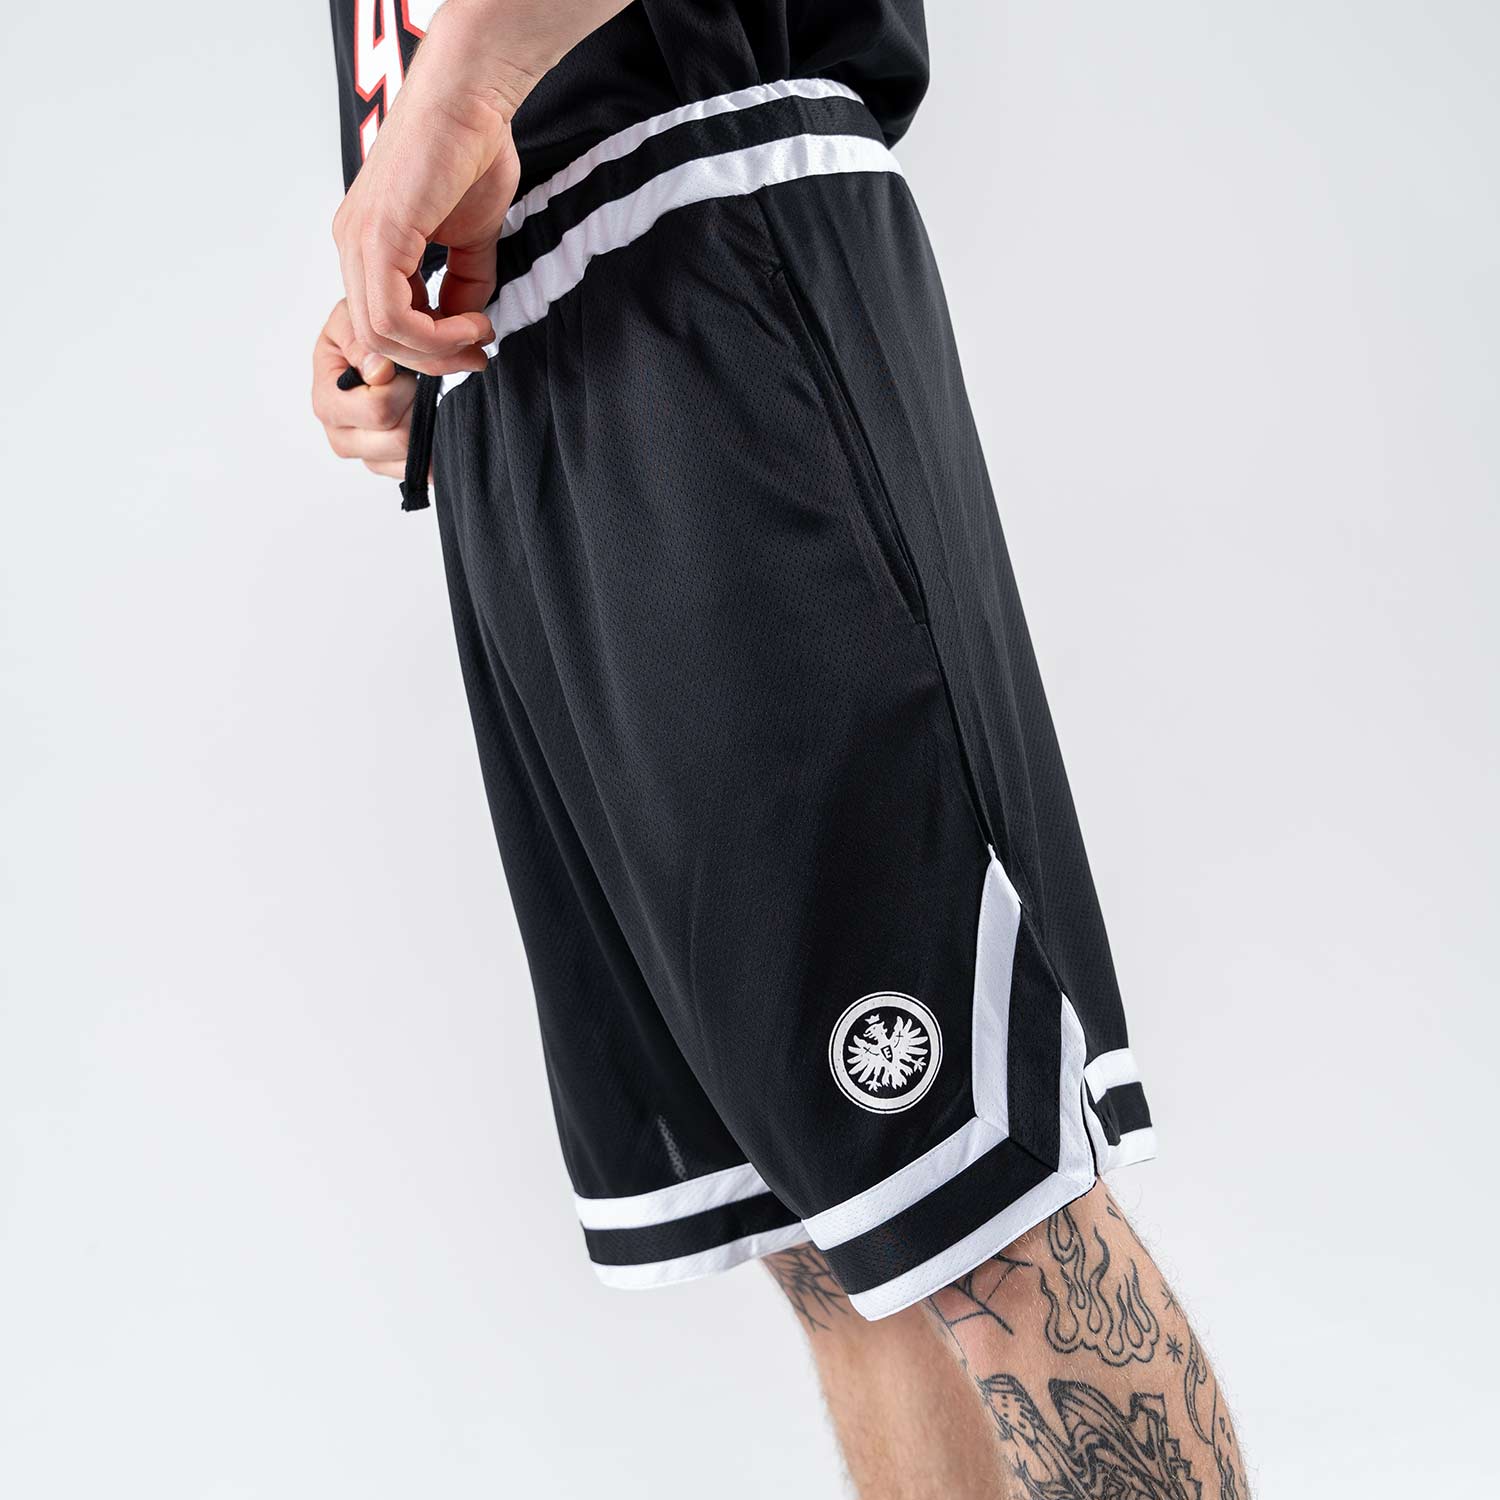 Bild 4: Basketball Shorts Logo